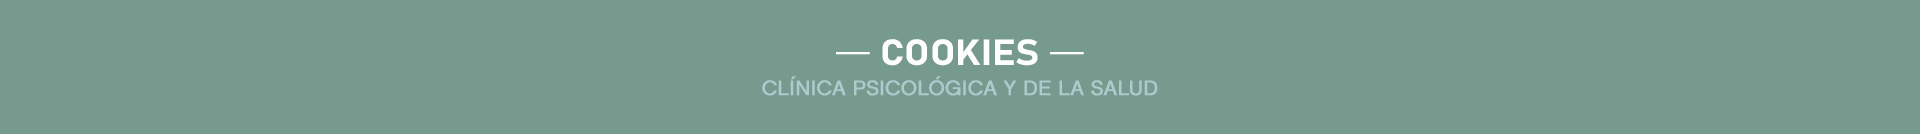 Cookies Catalina Poza Santos. Psicología, Terapias Individuales y de Pareja, Terapia Infantil / Adolescentes, Psicodermatología